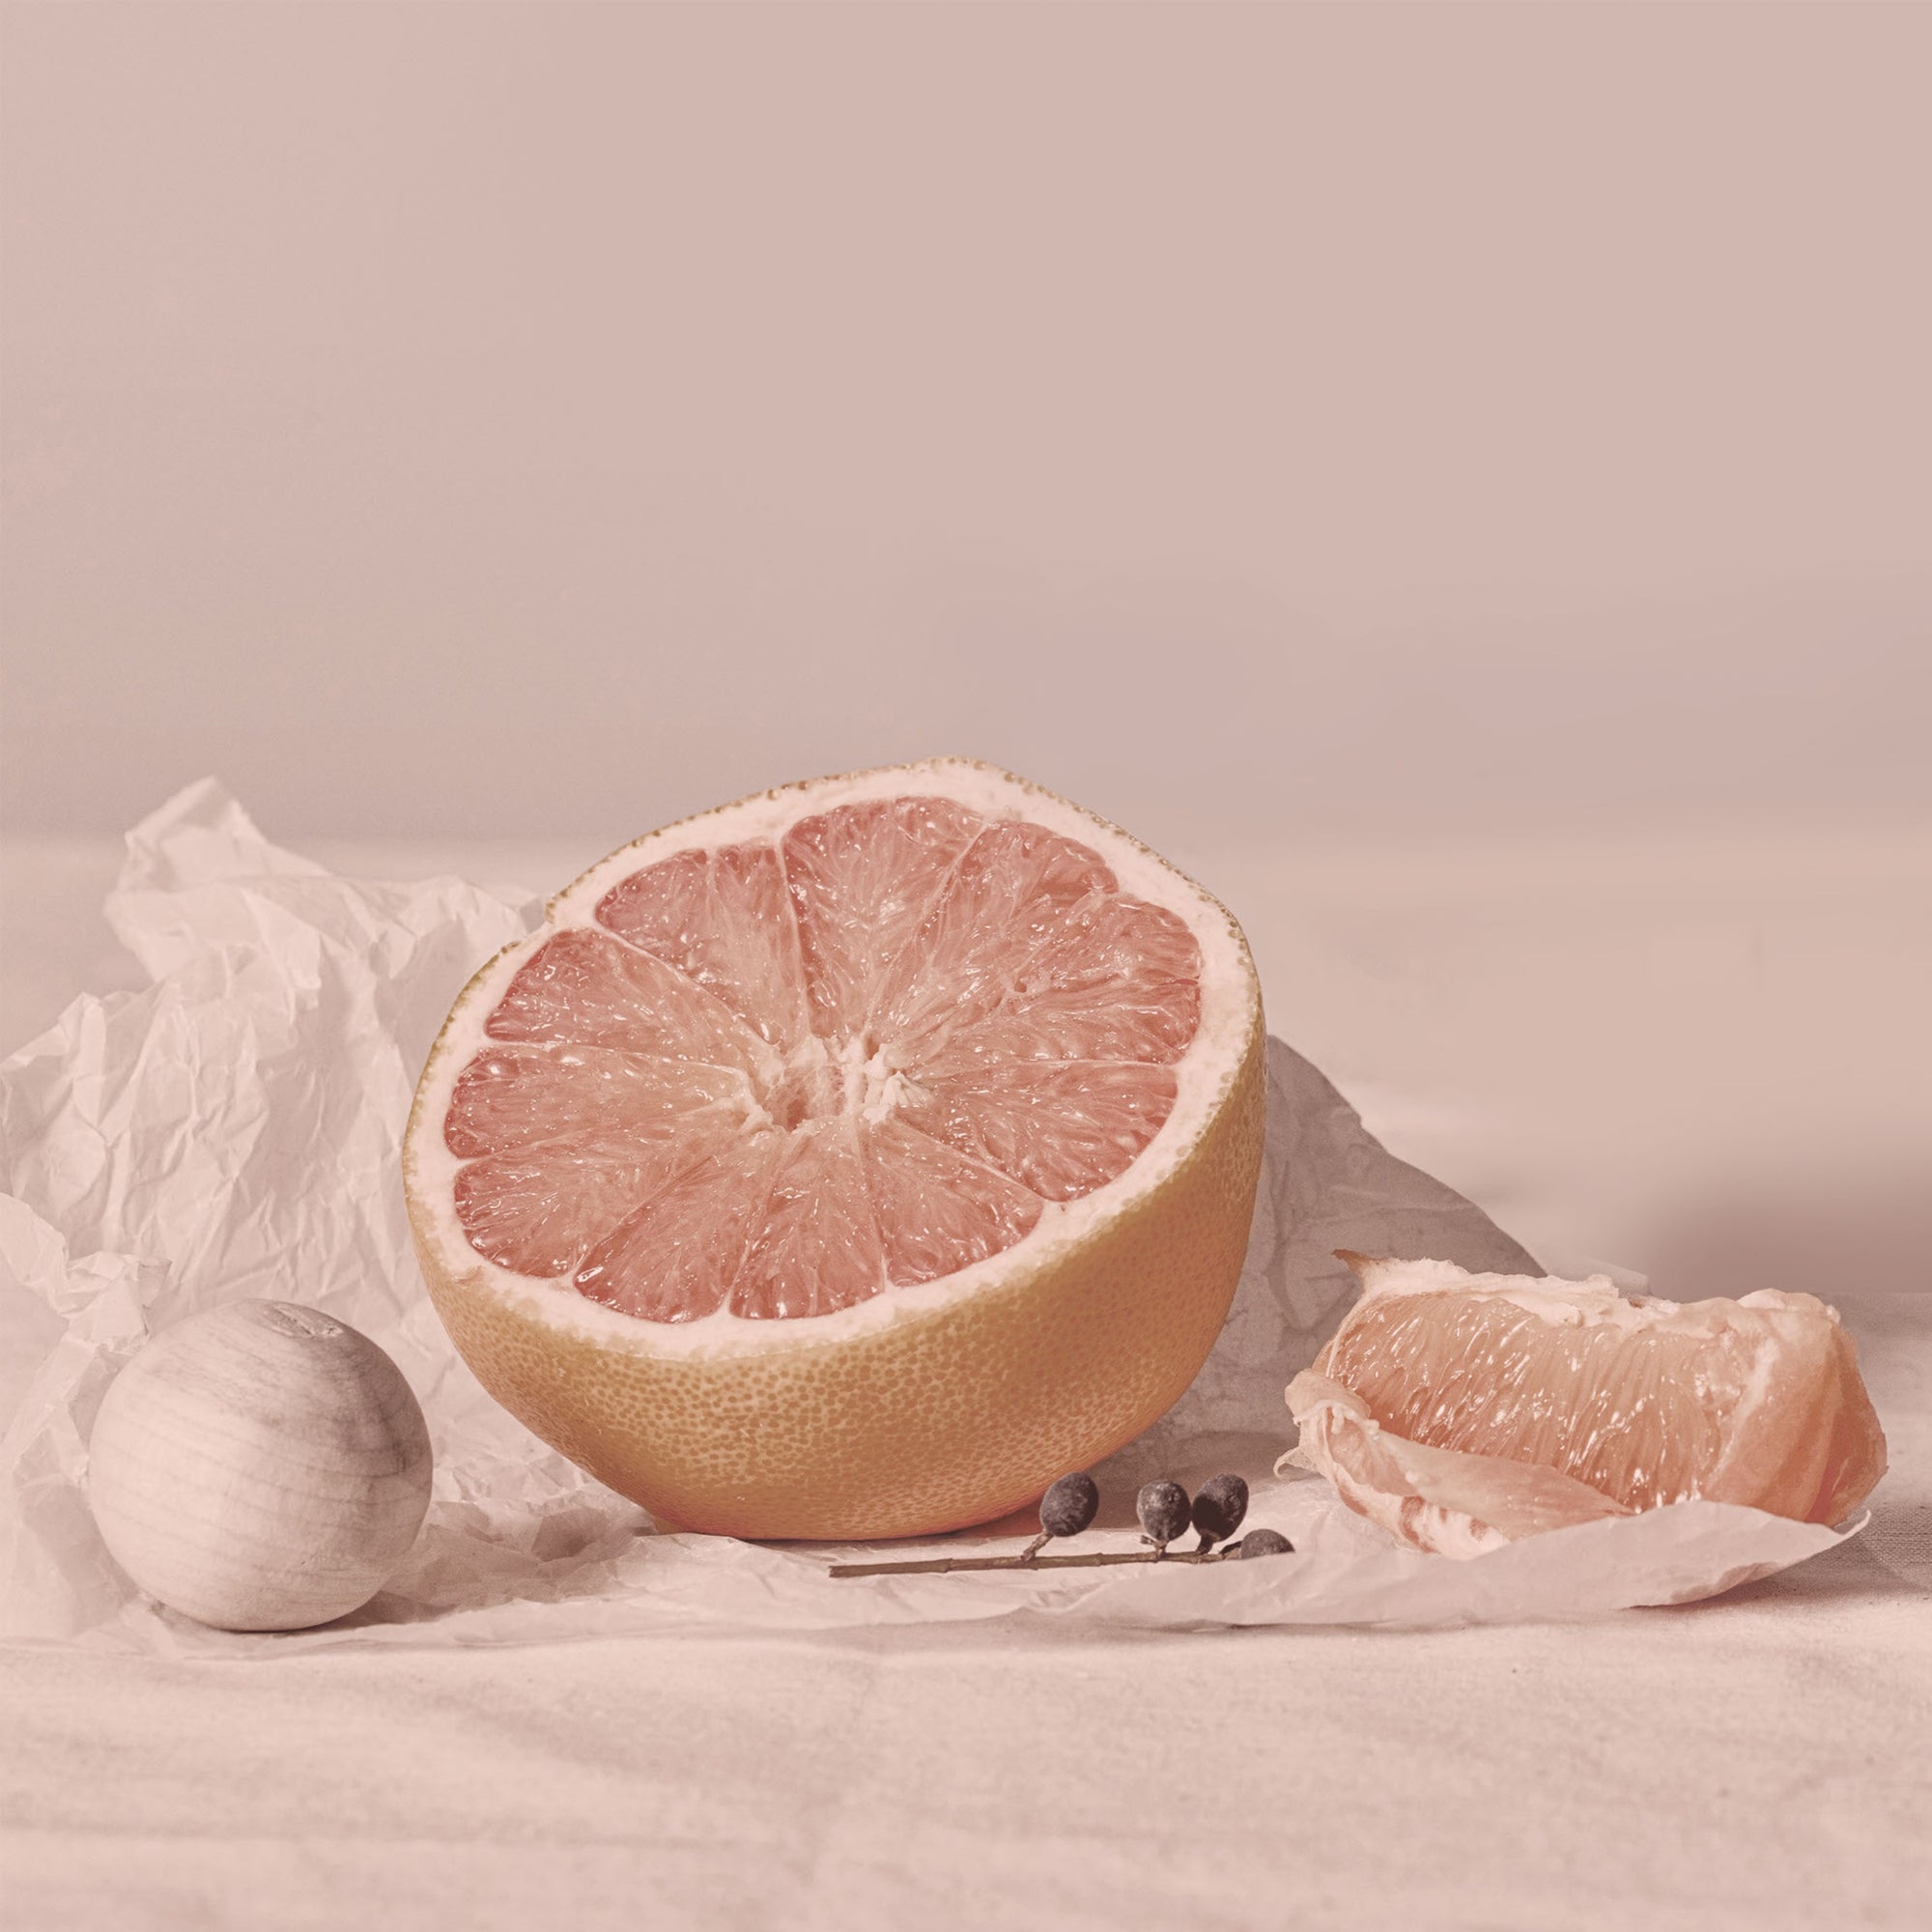 Honey & Macadamia Nature Shampoo 500ml - Pink Grapefruit